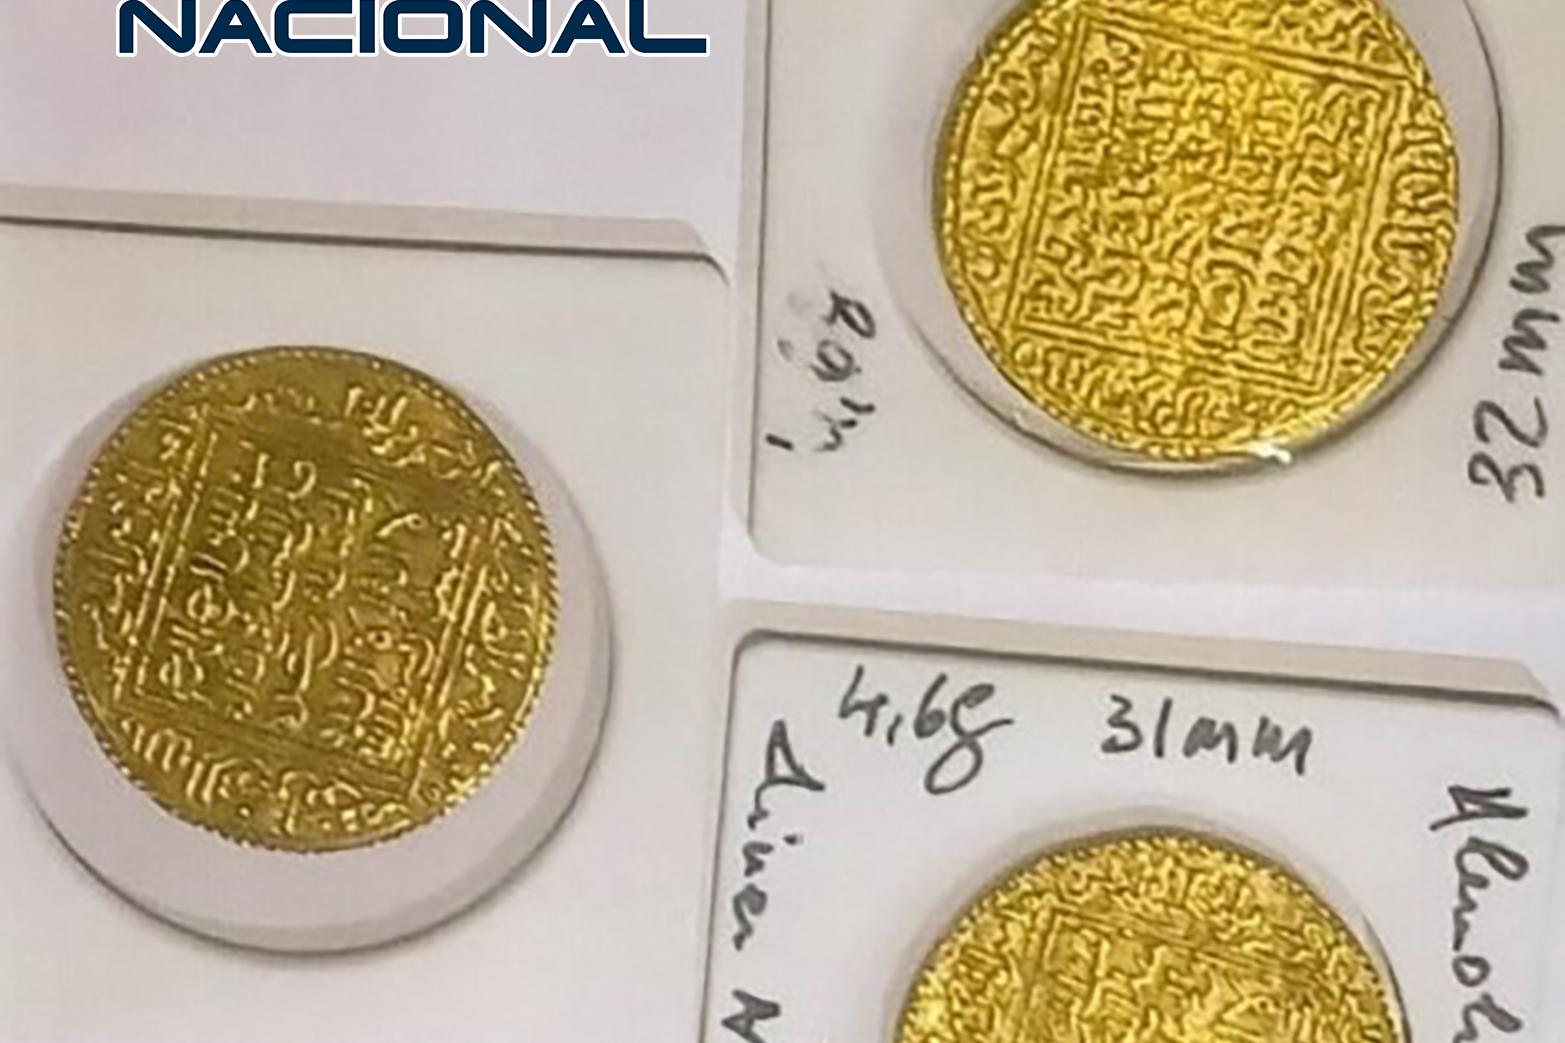 Imagen de tres monedas de oro intervenidas